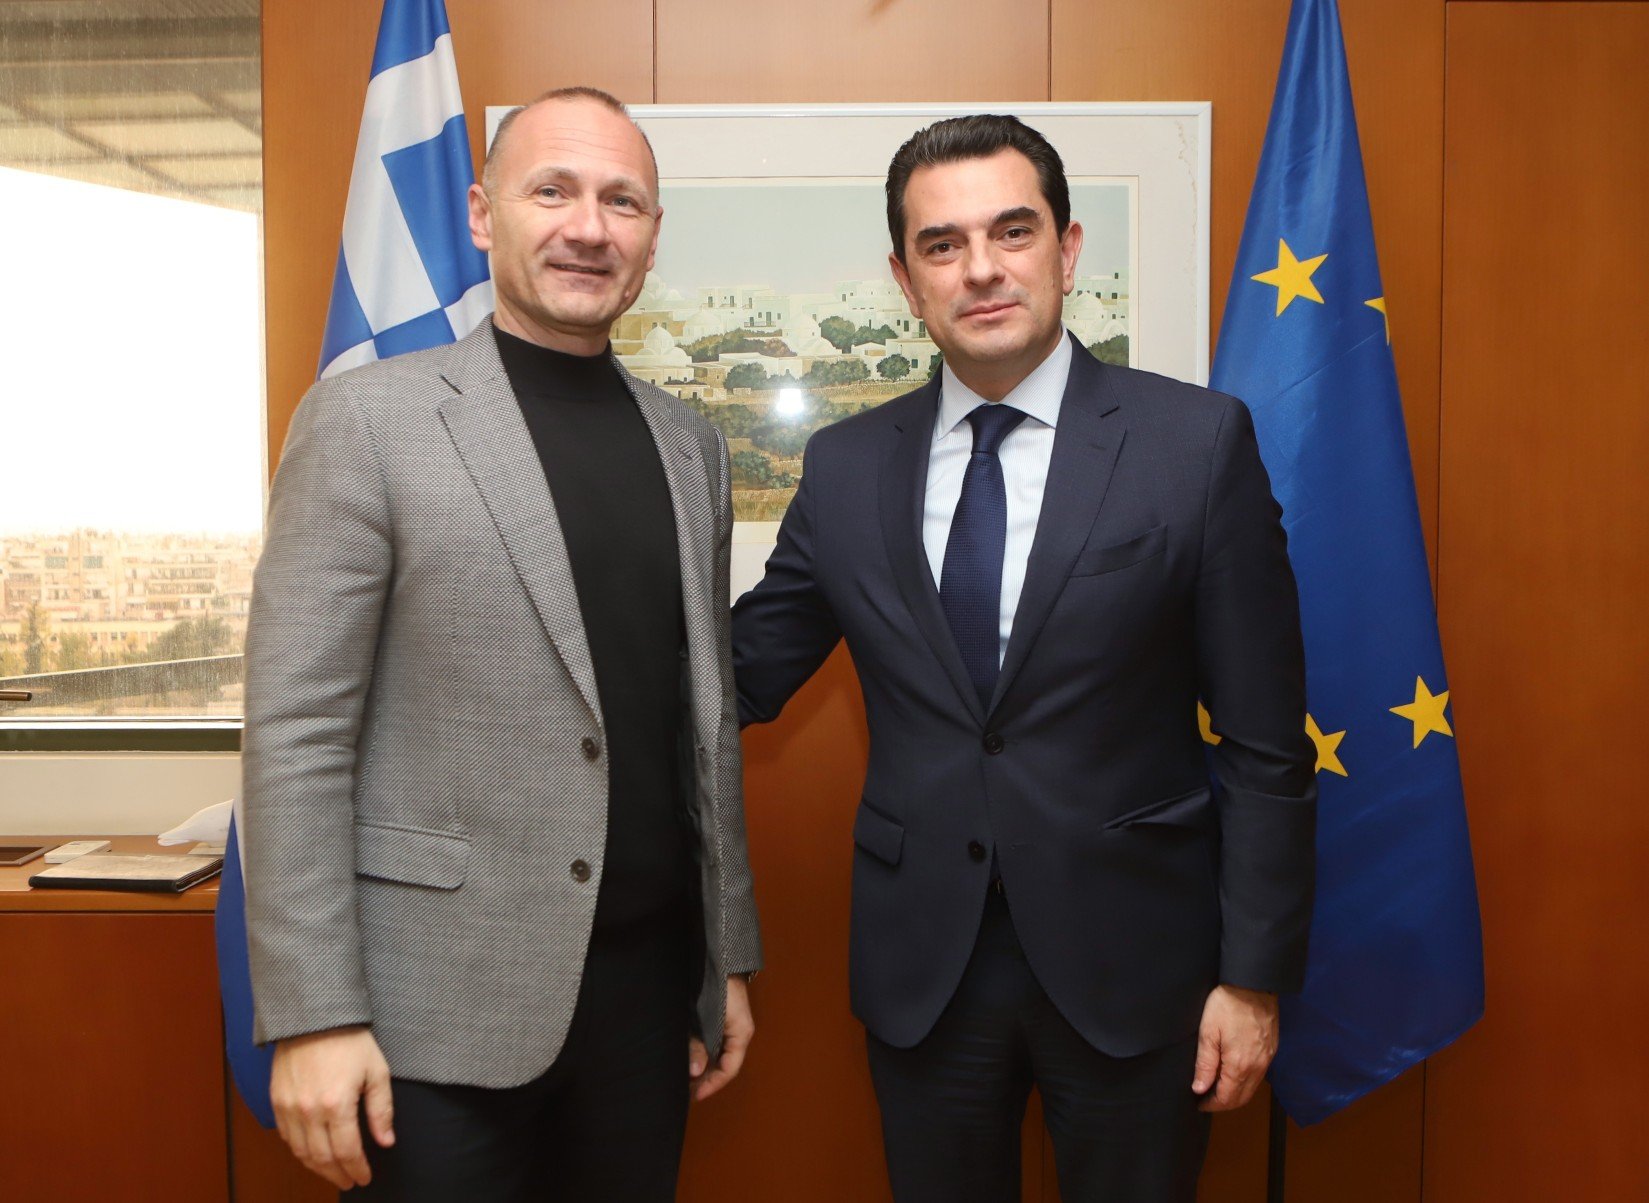 Κ. Σκρέκας: «Με τον αγωγό Αλεξανδρούπολης - Μπουργκάς εδραιώνουμε την Ελλάδα και τη Βουλγαρία ως πόλους σταθερότητας και ασφάλειας»